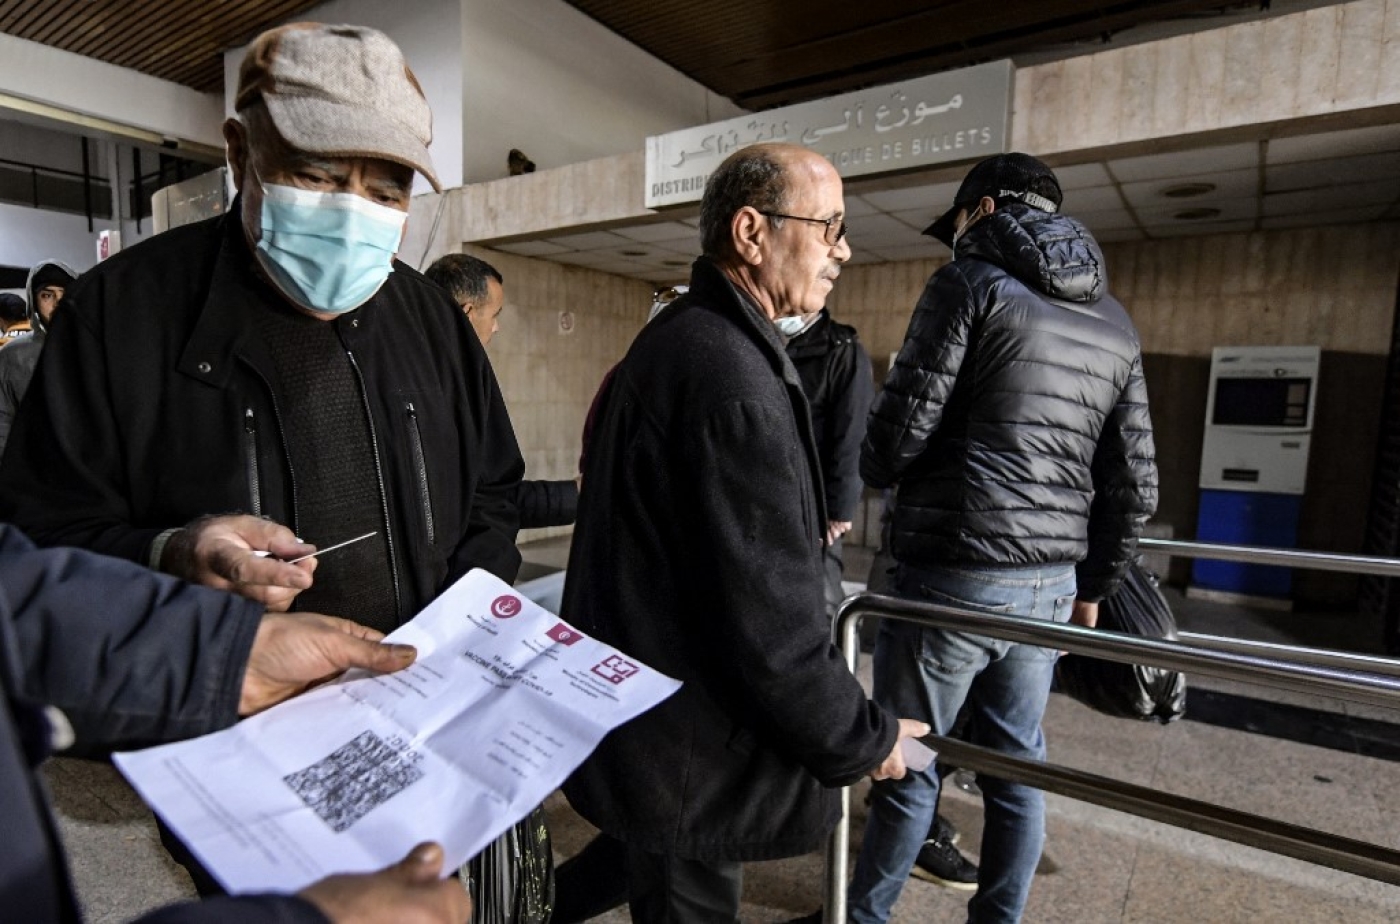 Un employé des transports publics tunisiens contrôle le pass vaccinal d’un passager à l’entrée d’une gare de la capitale Tunis, le 22 décembre 2021 (AFP/Fethi Belaid)